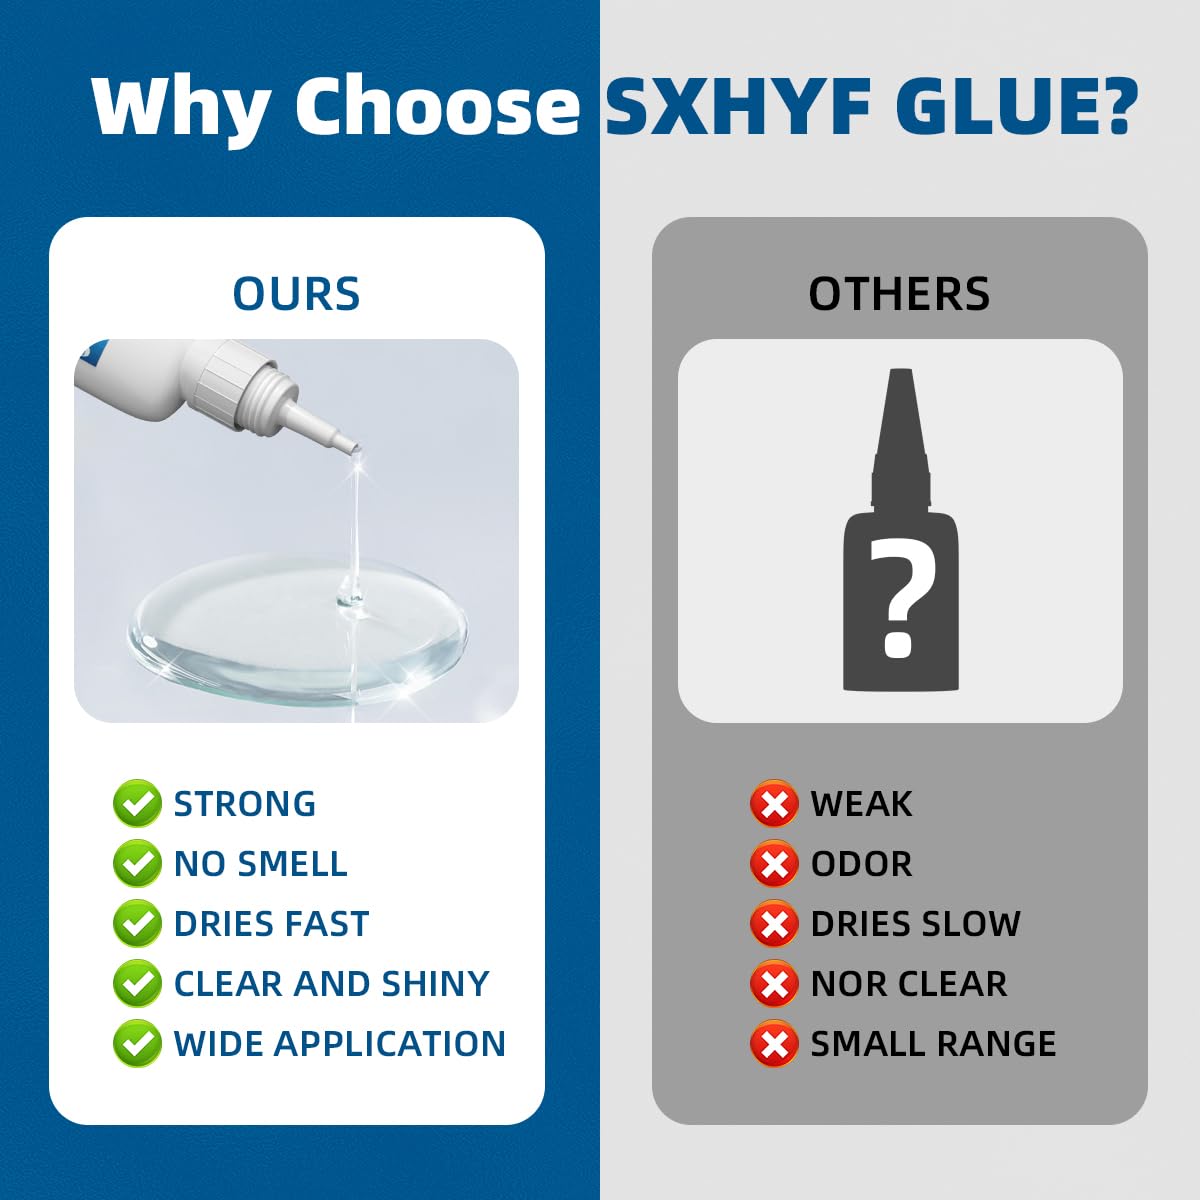 SXhyf Stone Glue